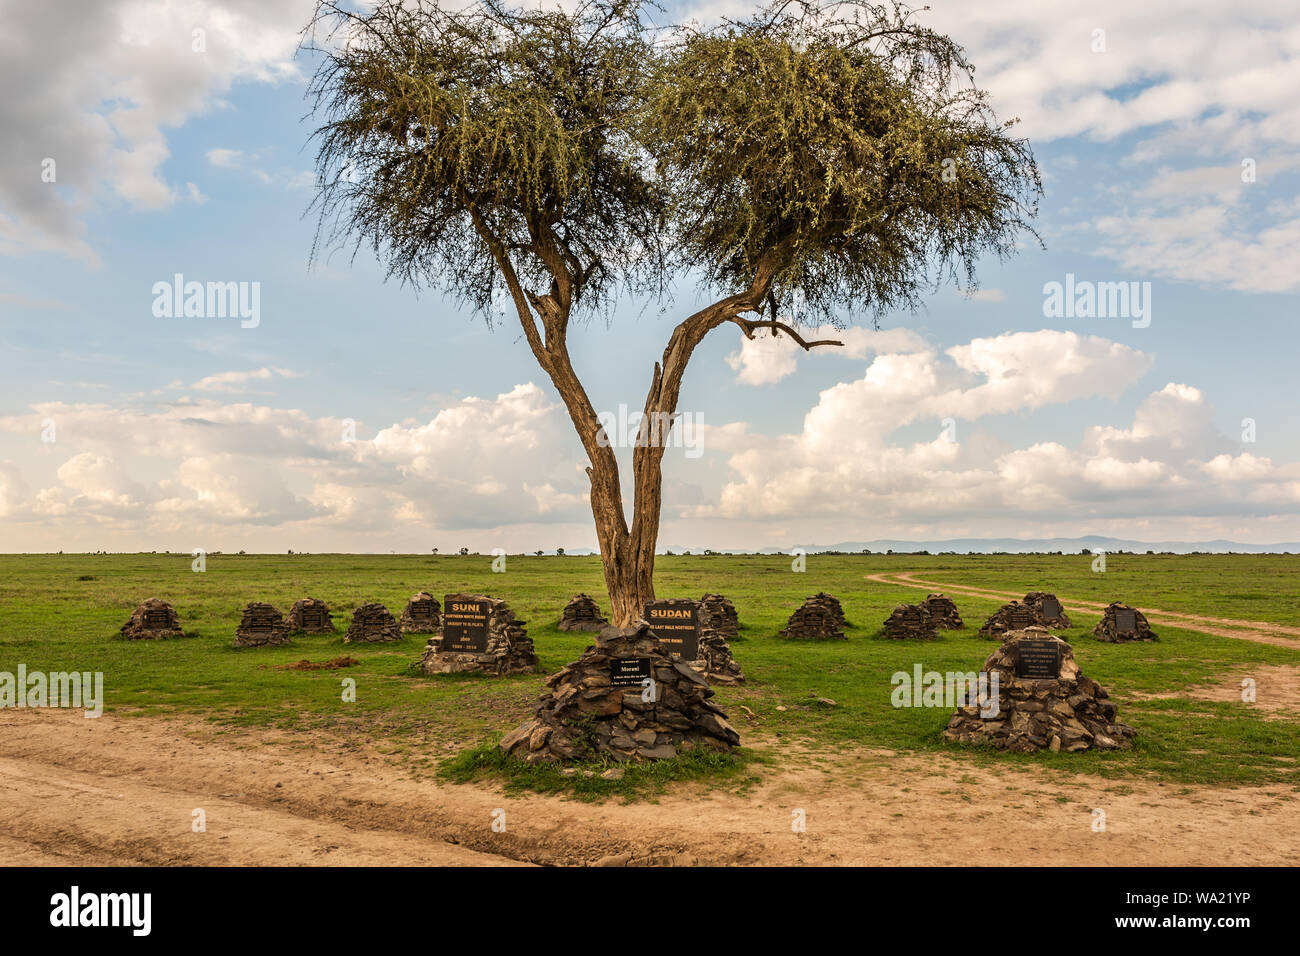 Ol Pejeta Conservancy, condado de Laikipia, Kenya - Junio 12th, 2019: Paisaje fotografía de un rinoceronte monumento que honra la vida de todos los Ol Pejeta Foto de stock